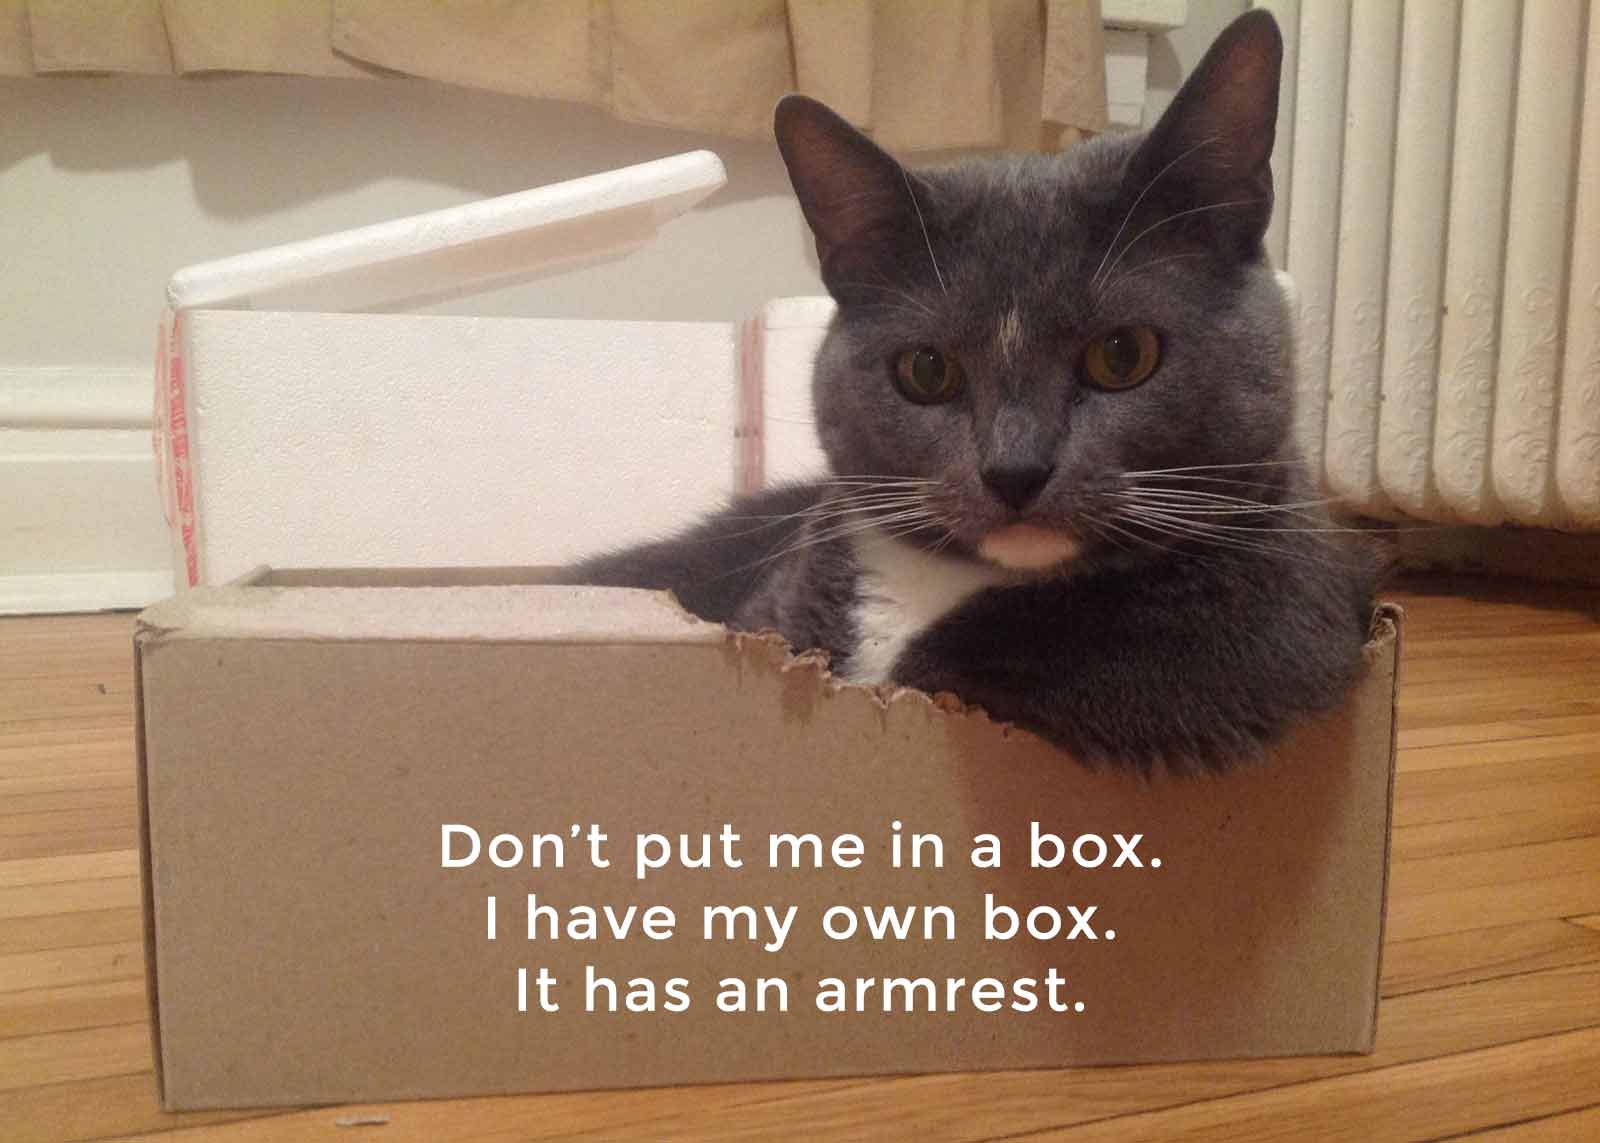 15-03-09-cx-brand-cat-in-a-box